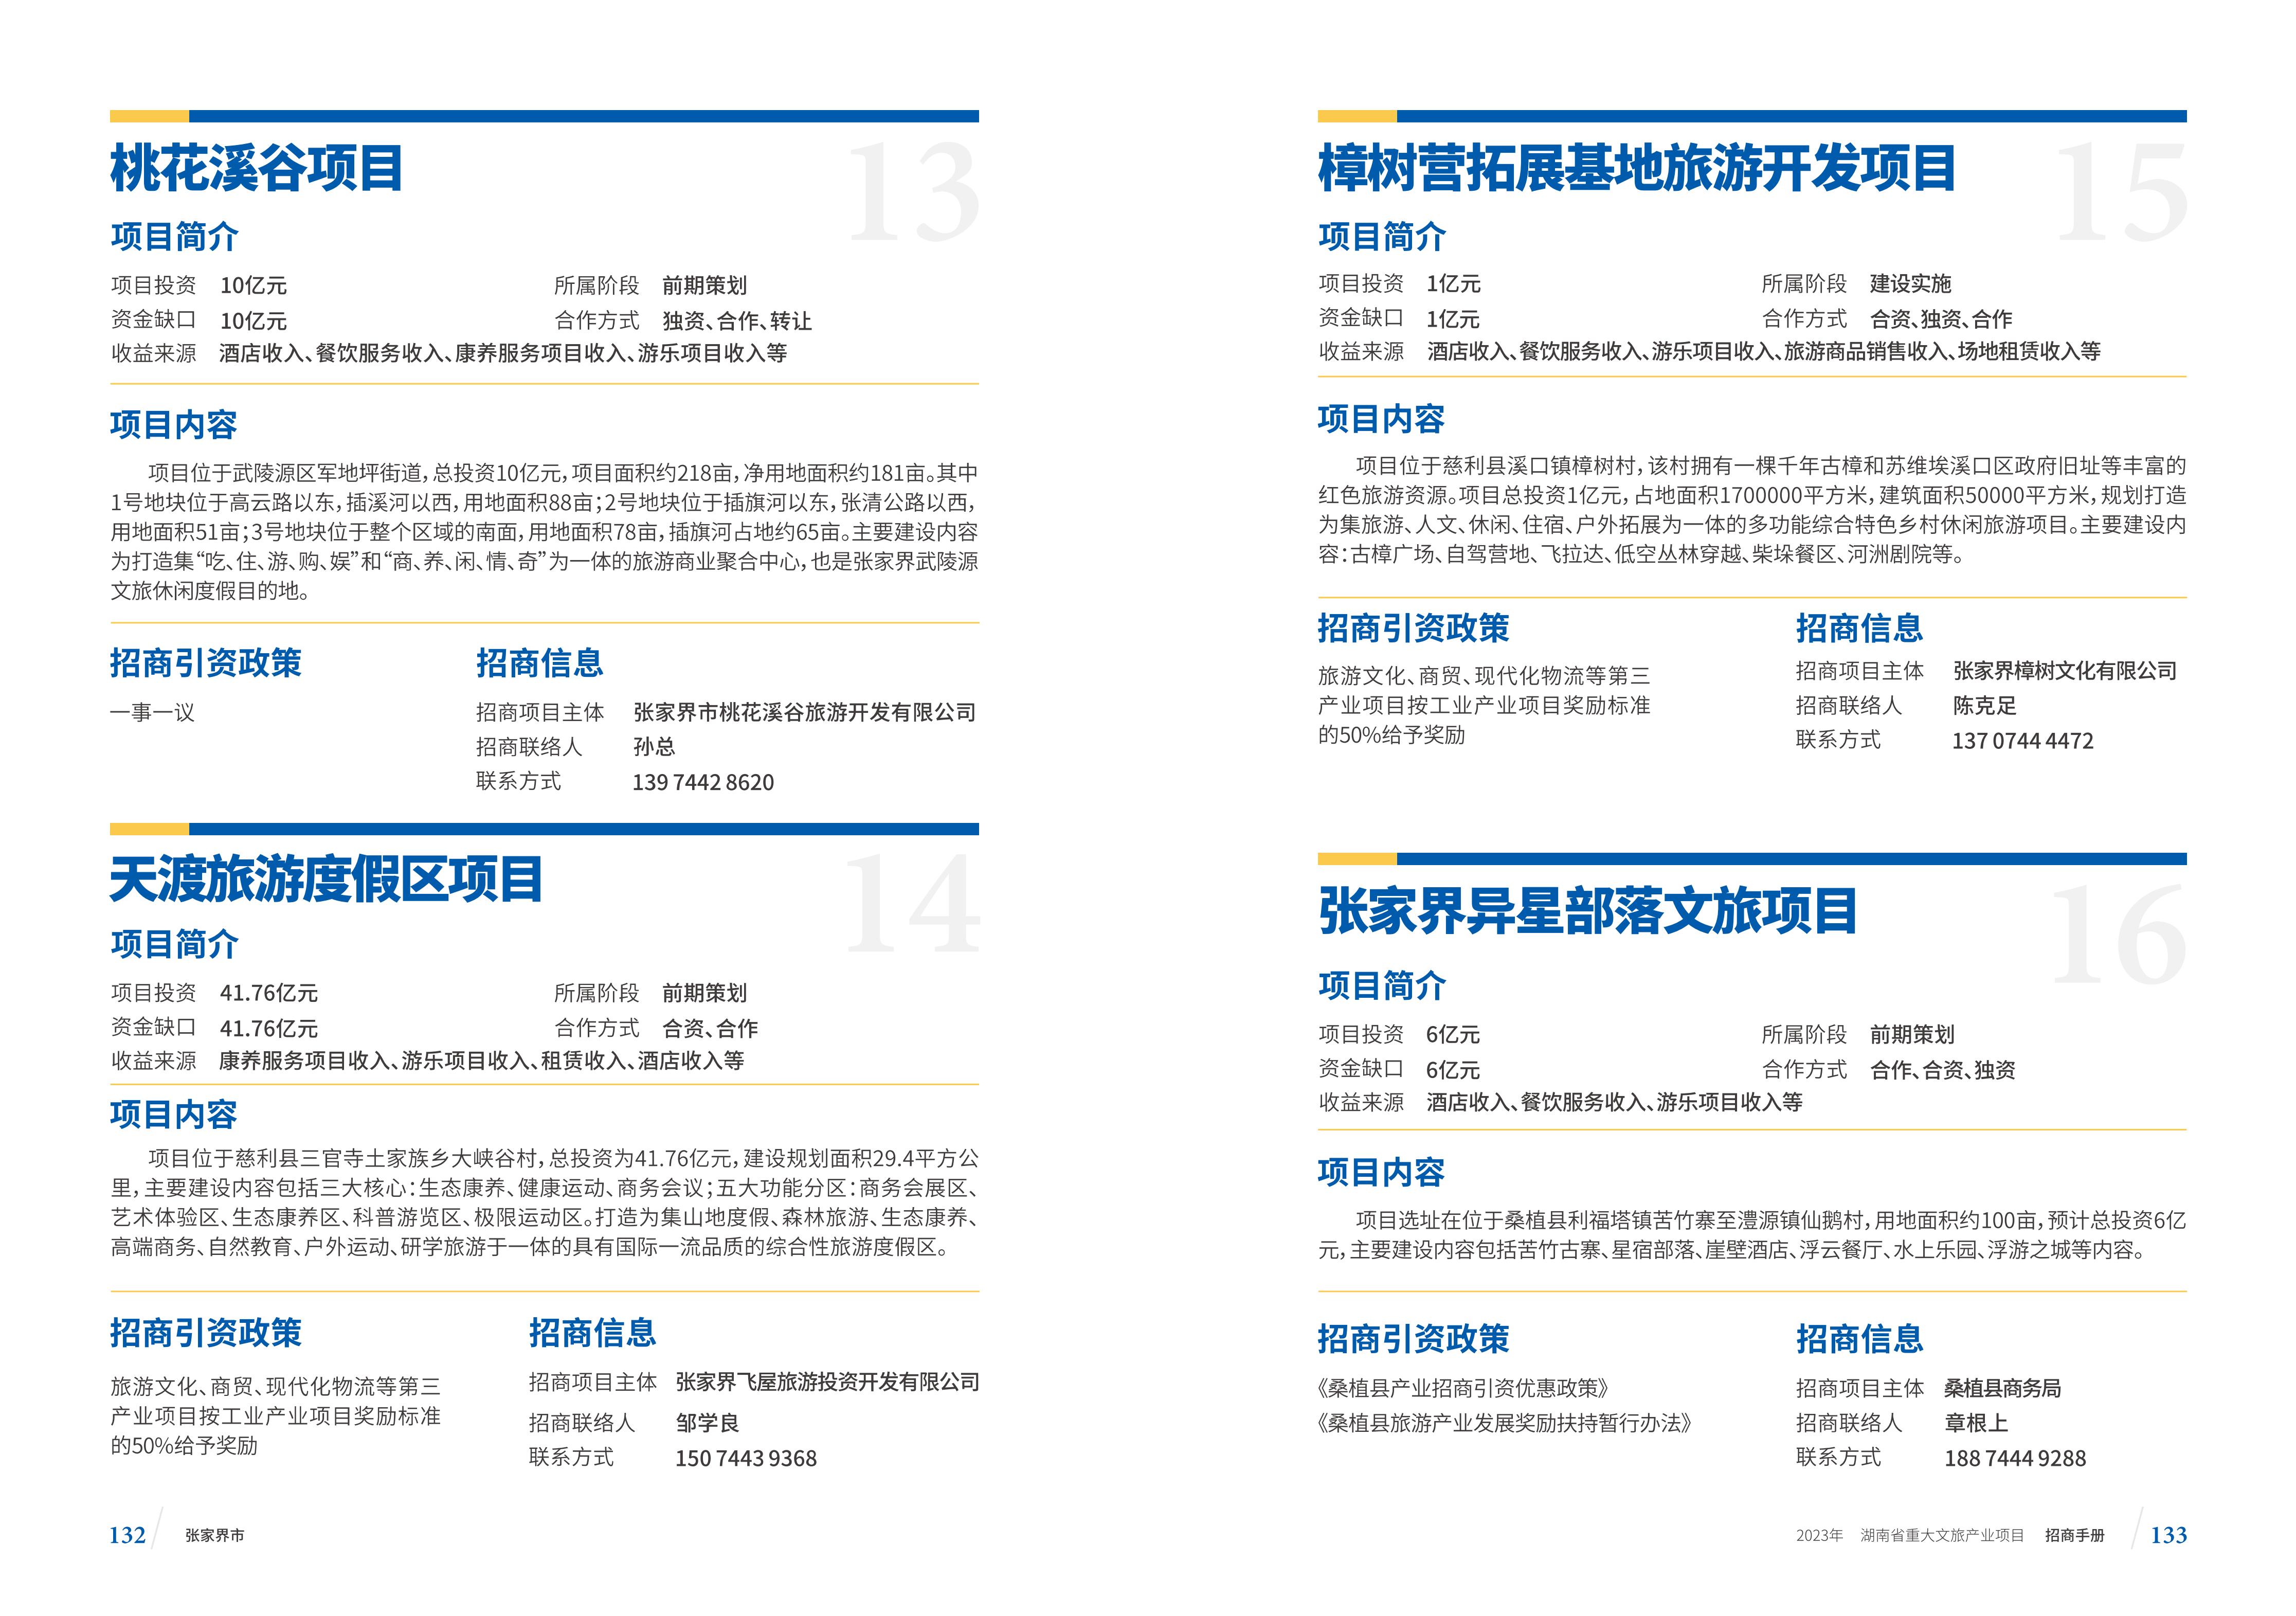 湖南省重大文旅产业项目招手册线上链接版_74.jpg